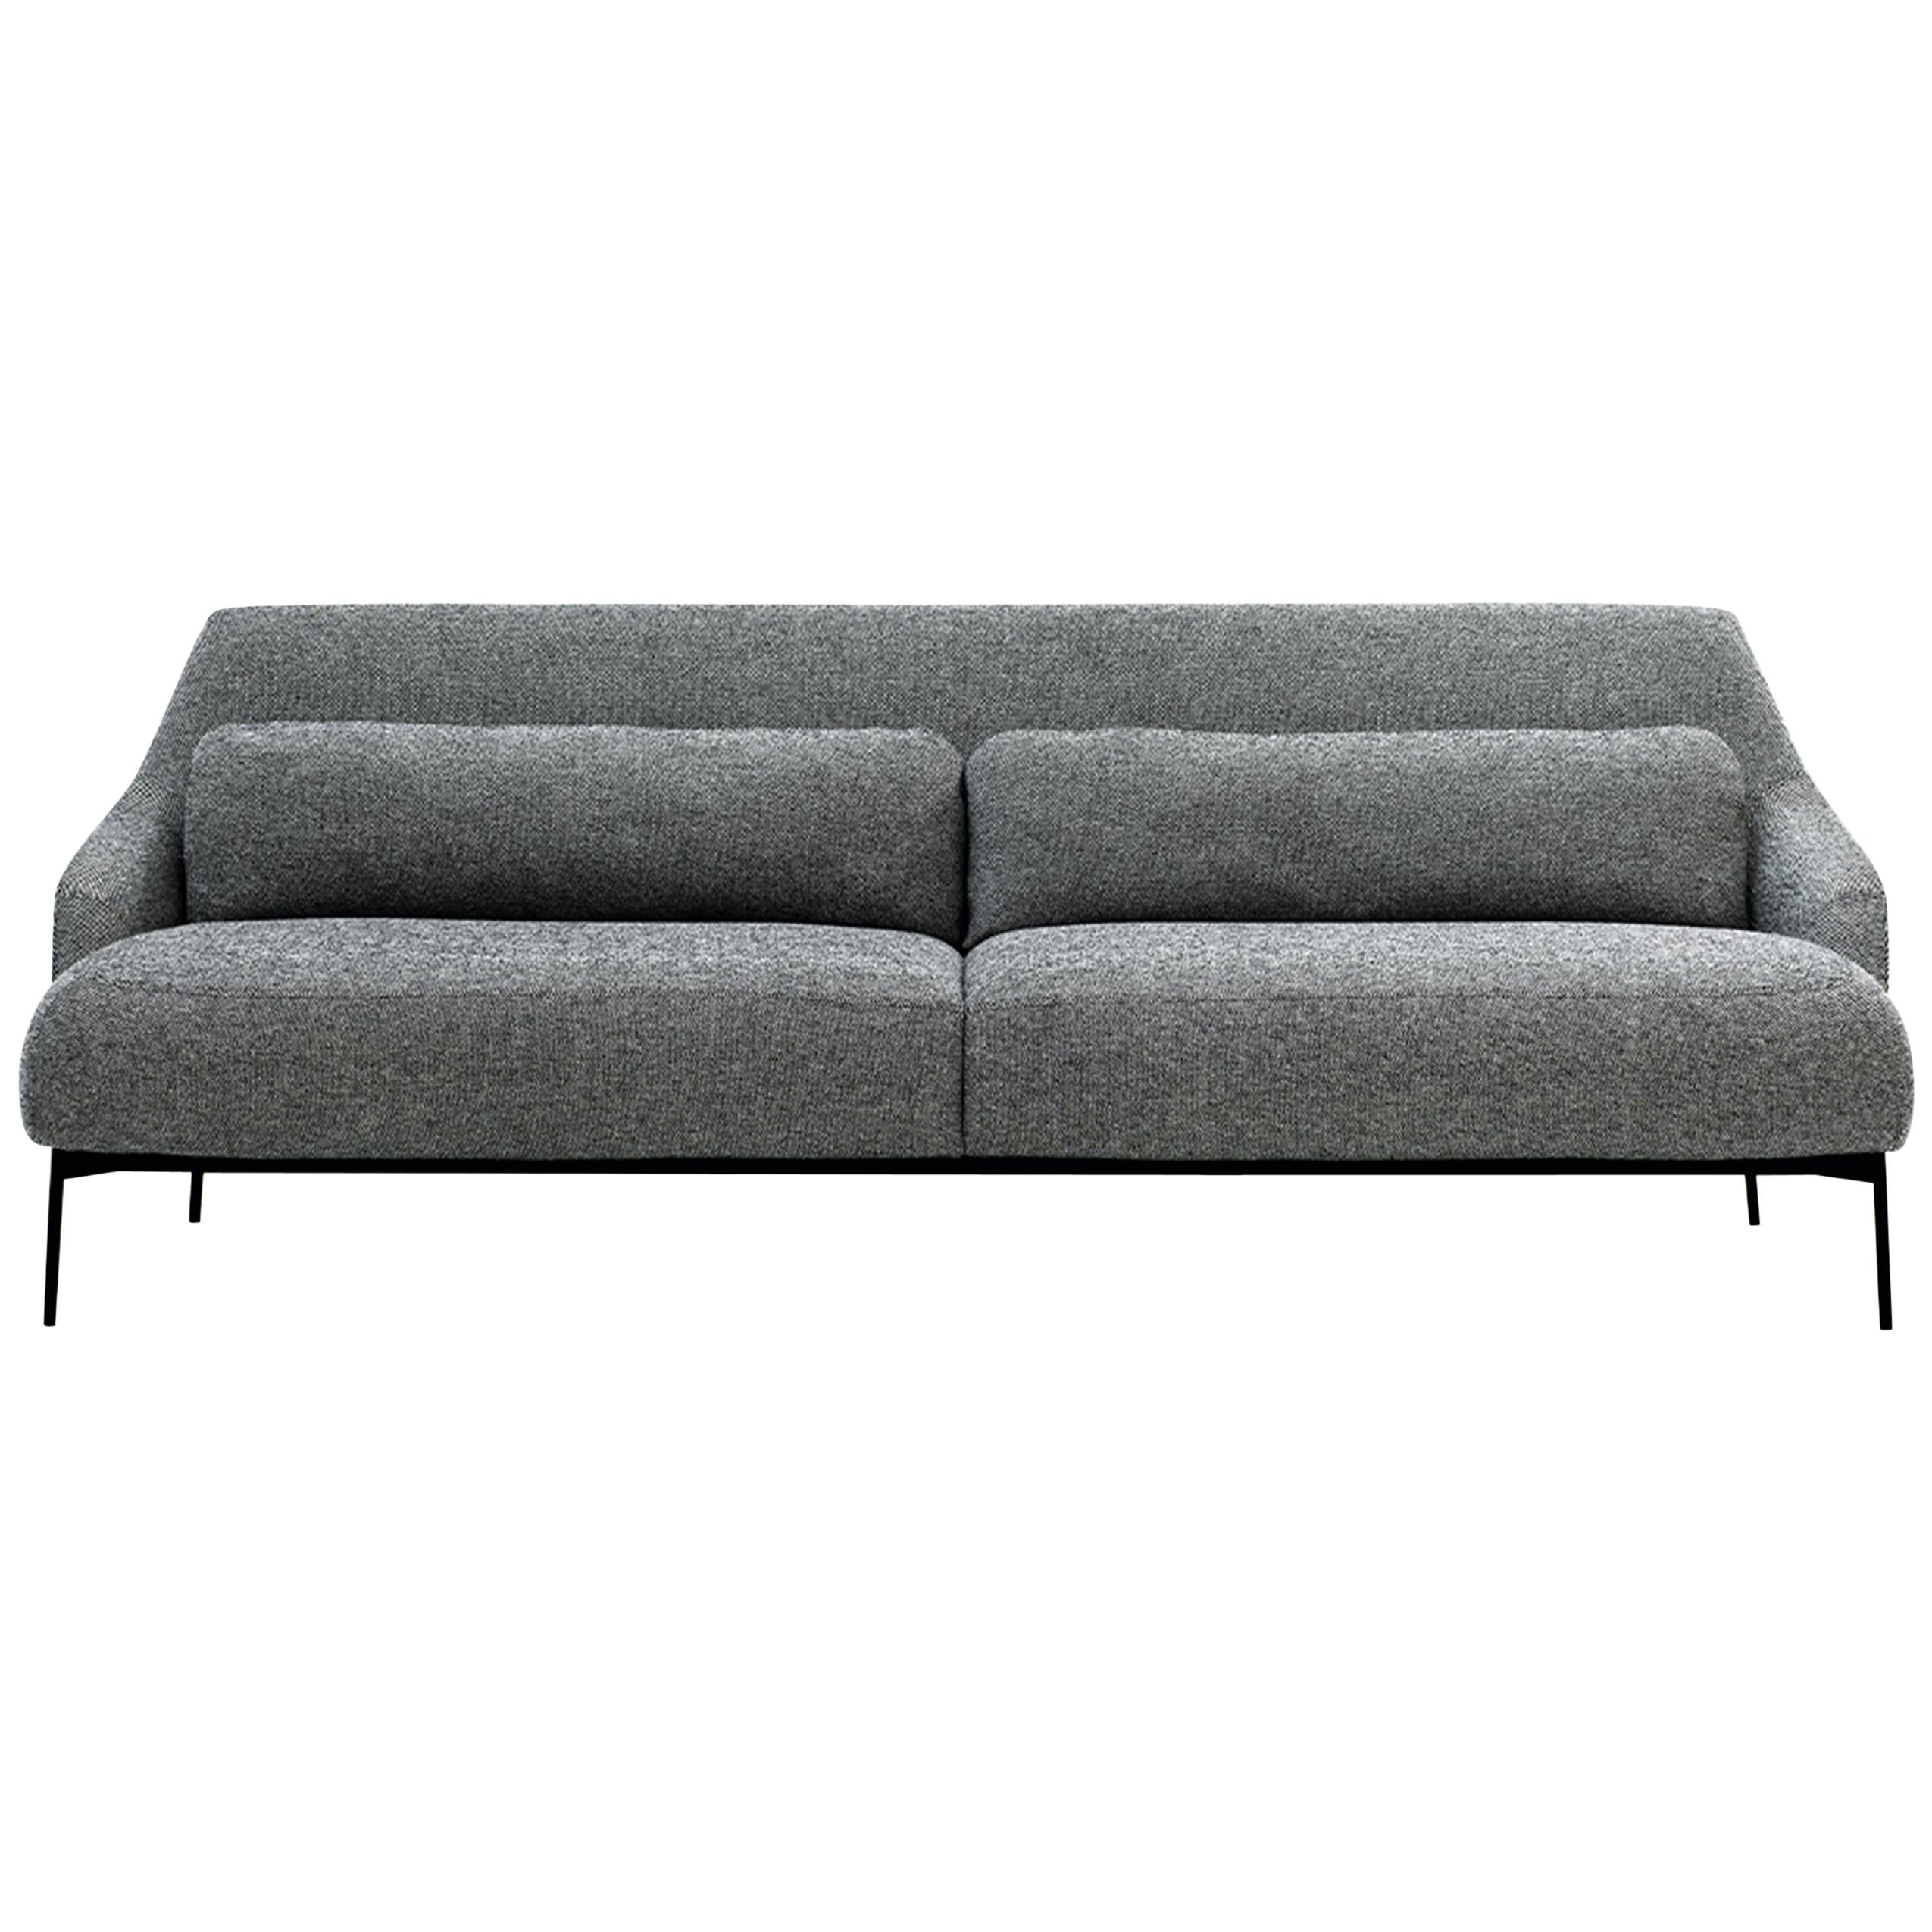 Anpassbares Tacchini Lima-Sofa, entworfen von Claesson Koivisto Rune